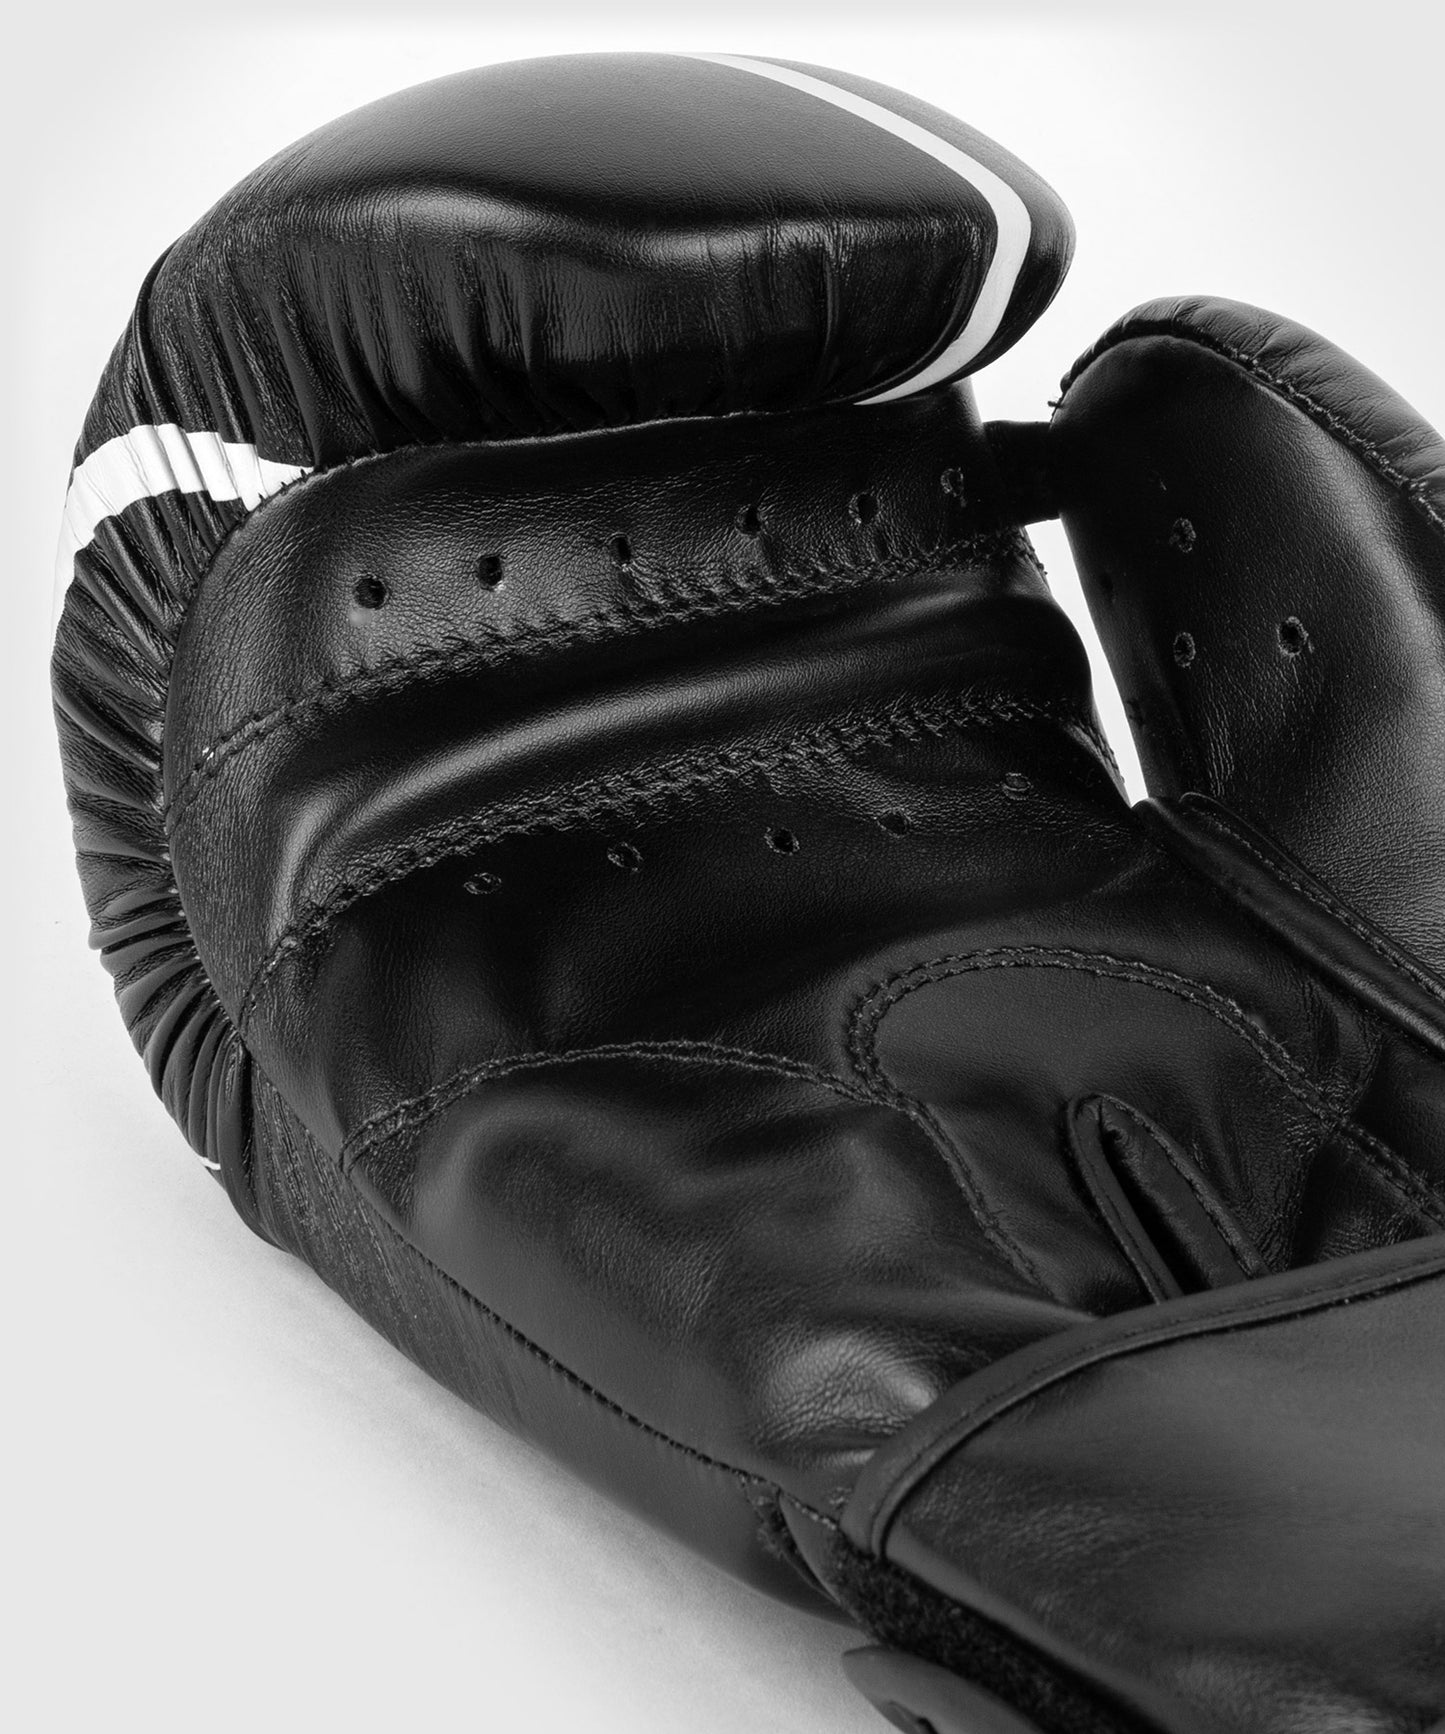 Guantes de boxeo Venum Contender 1.2 - Negro/Blanco